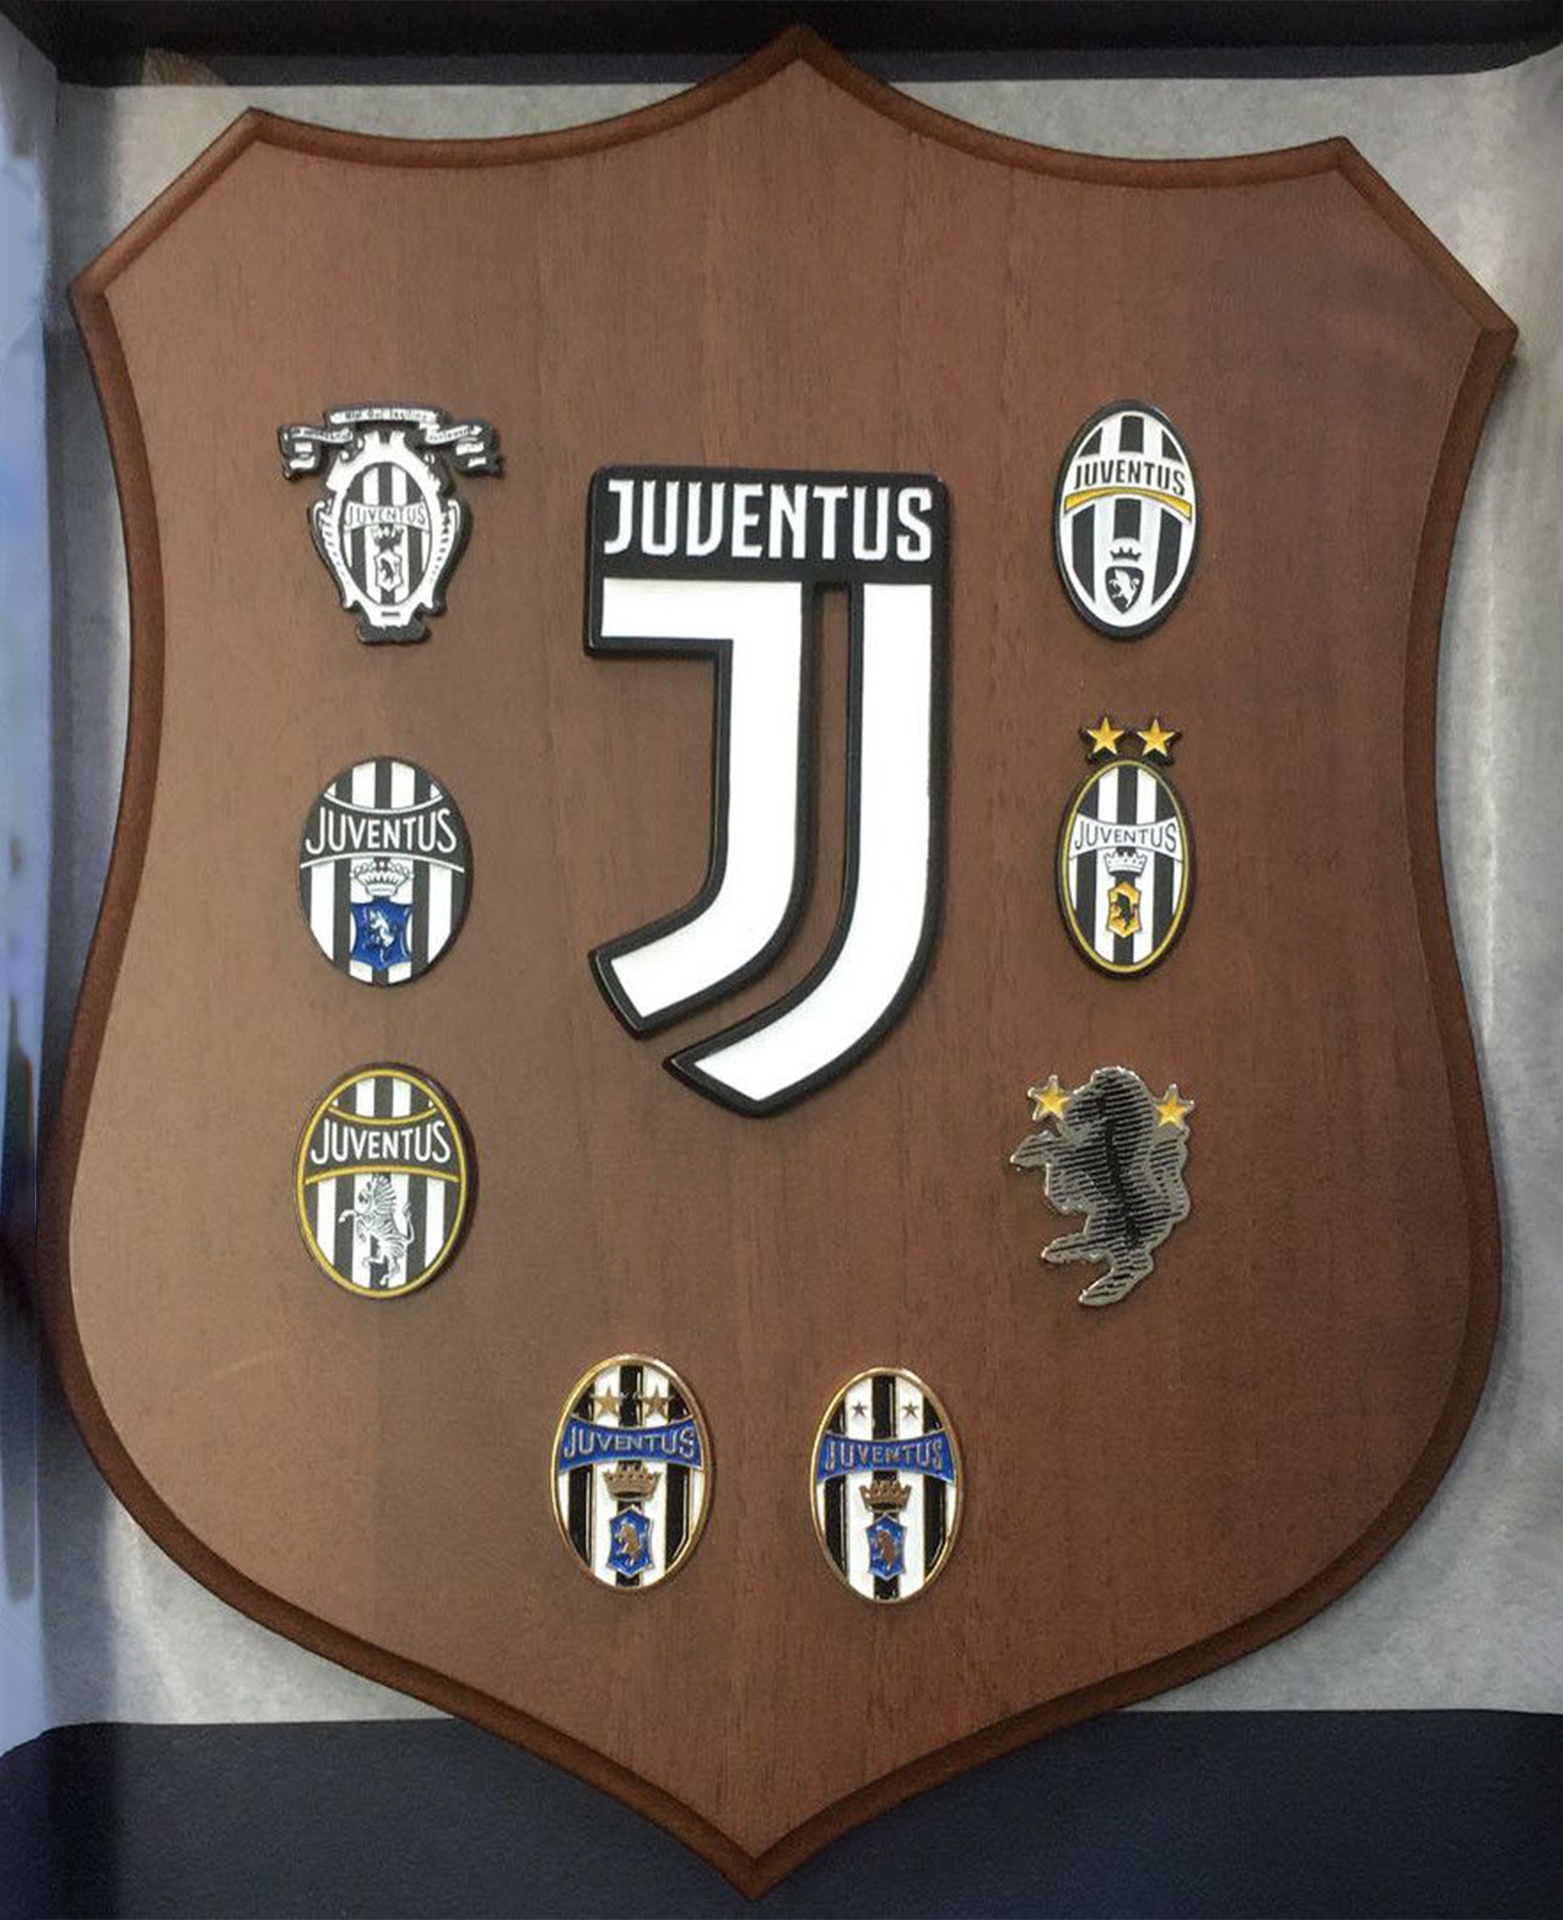 CREST ARALDICO art. JU1305 Logo ufficiale e marchi storici Juventus